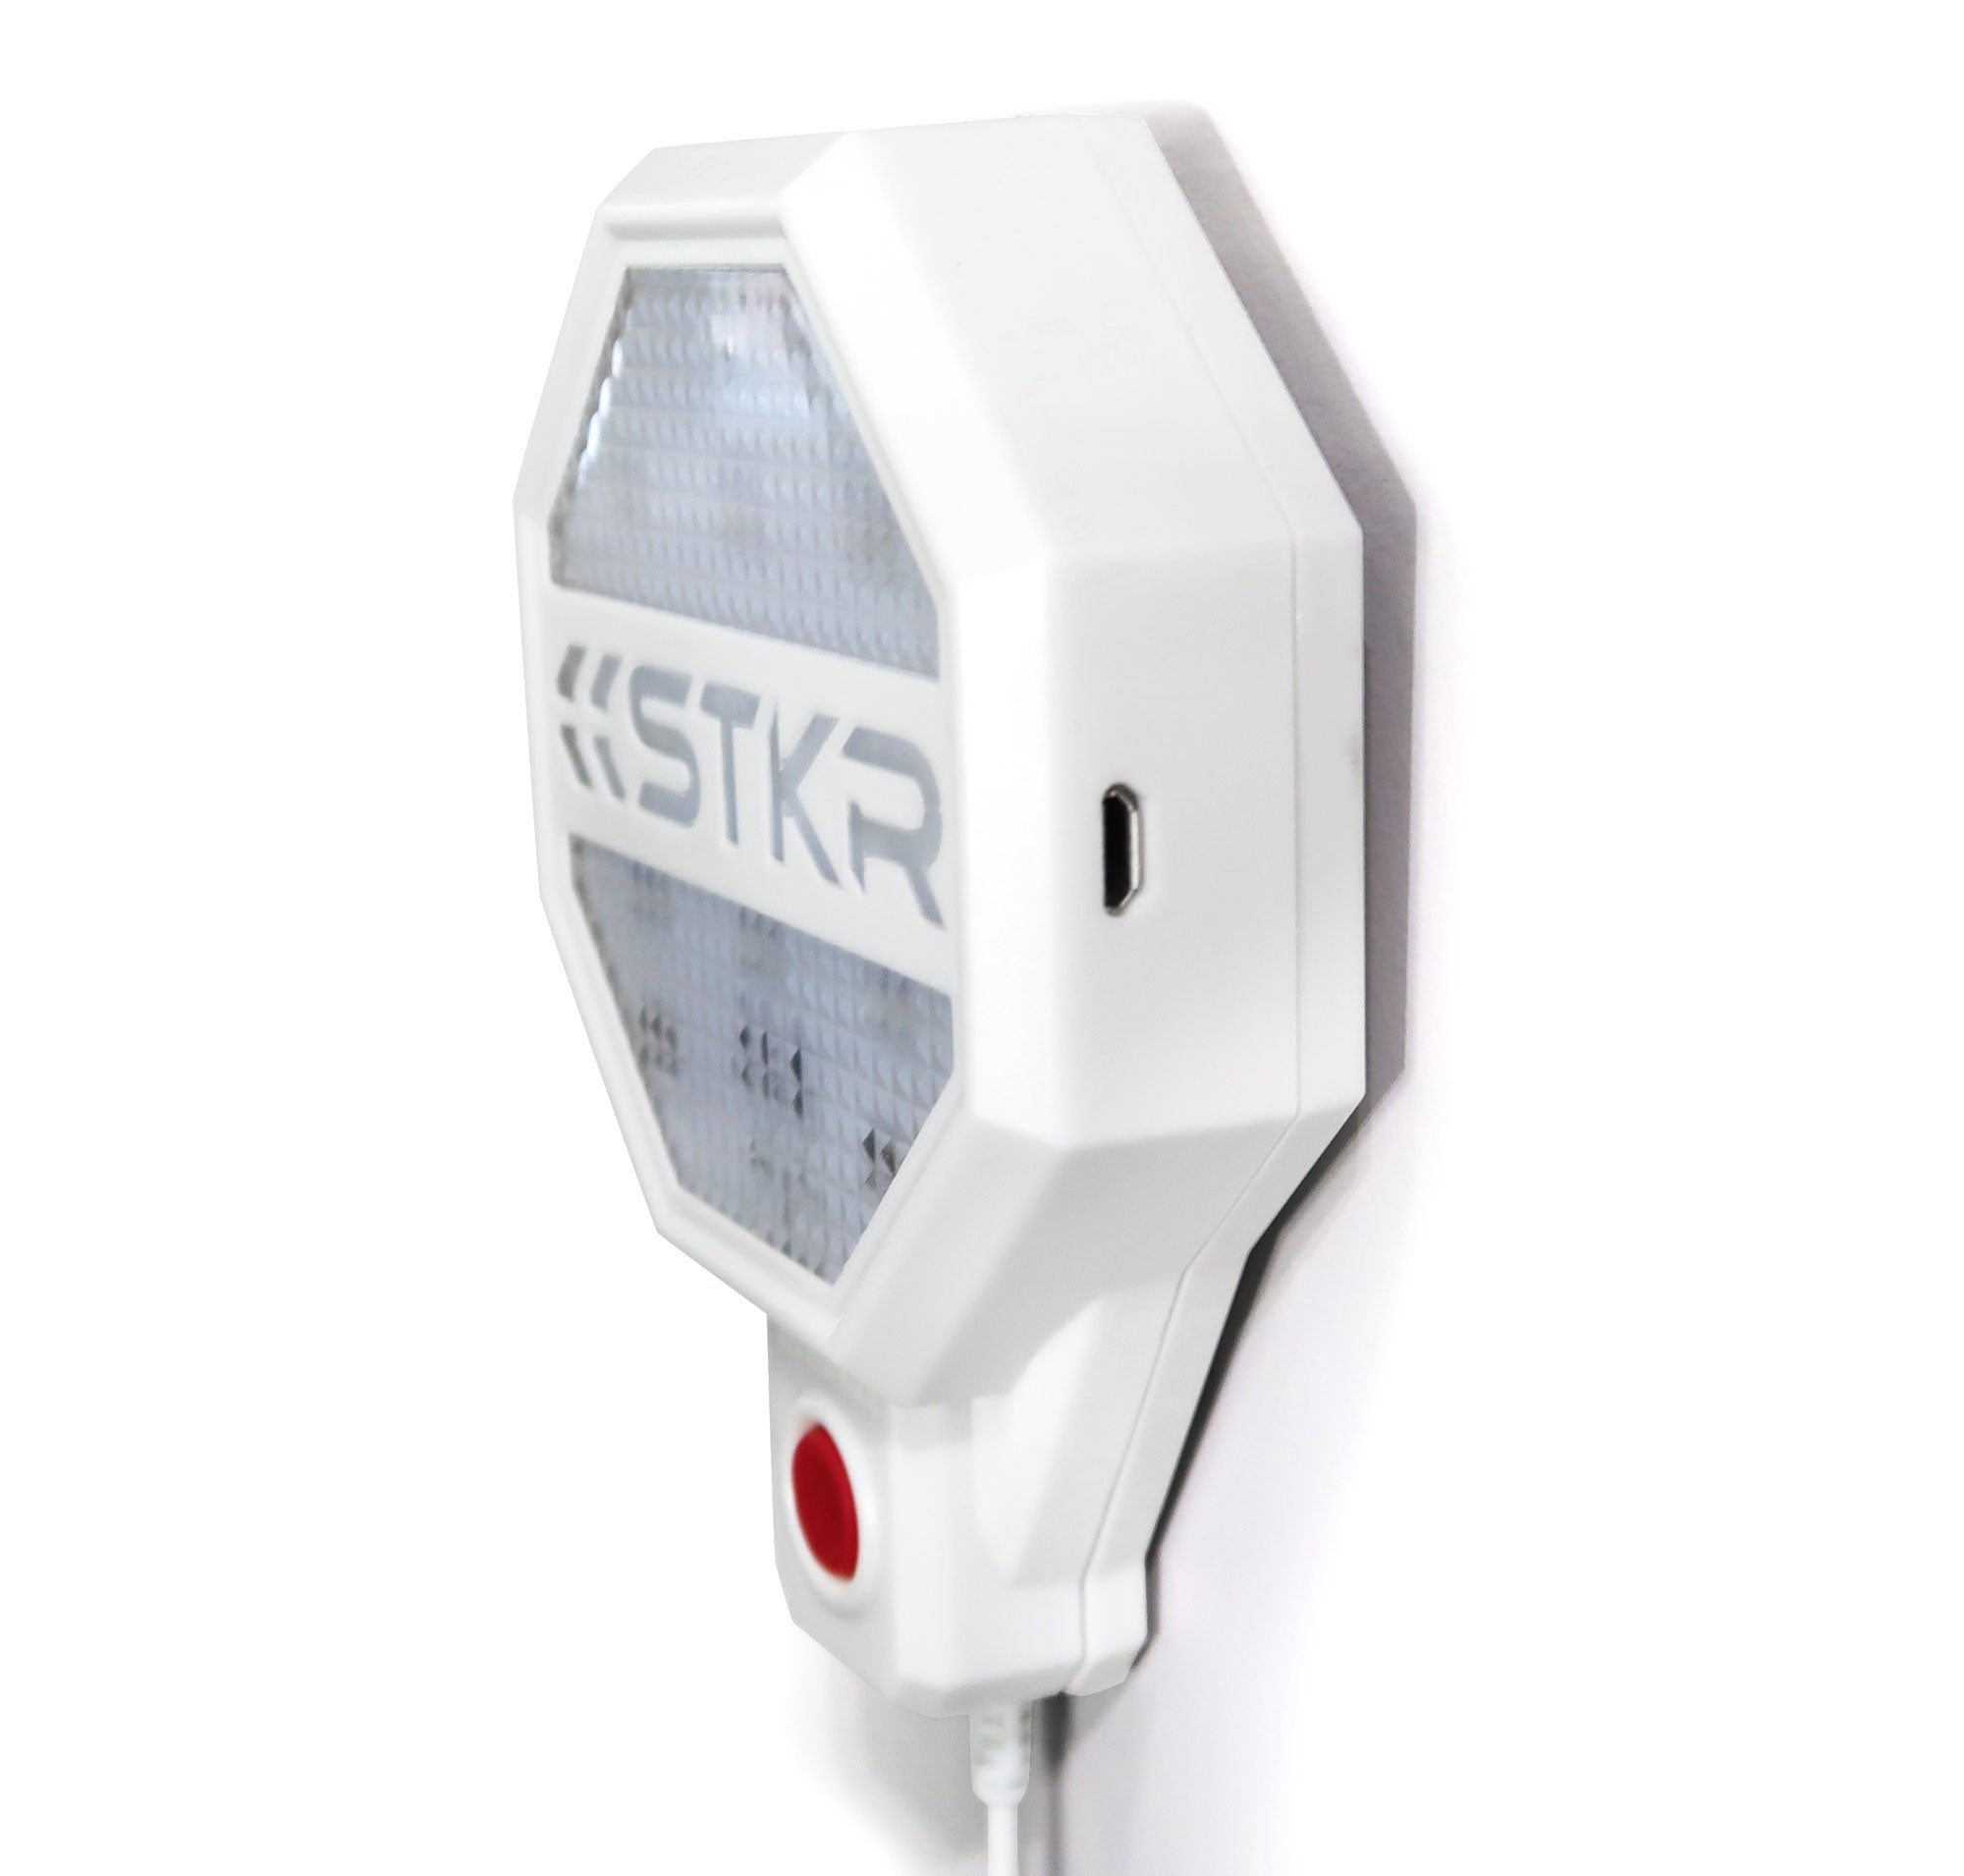 Mount Garage Parking Sensor anywhere | STKR Concepts - striker